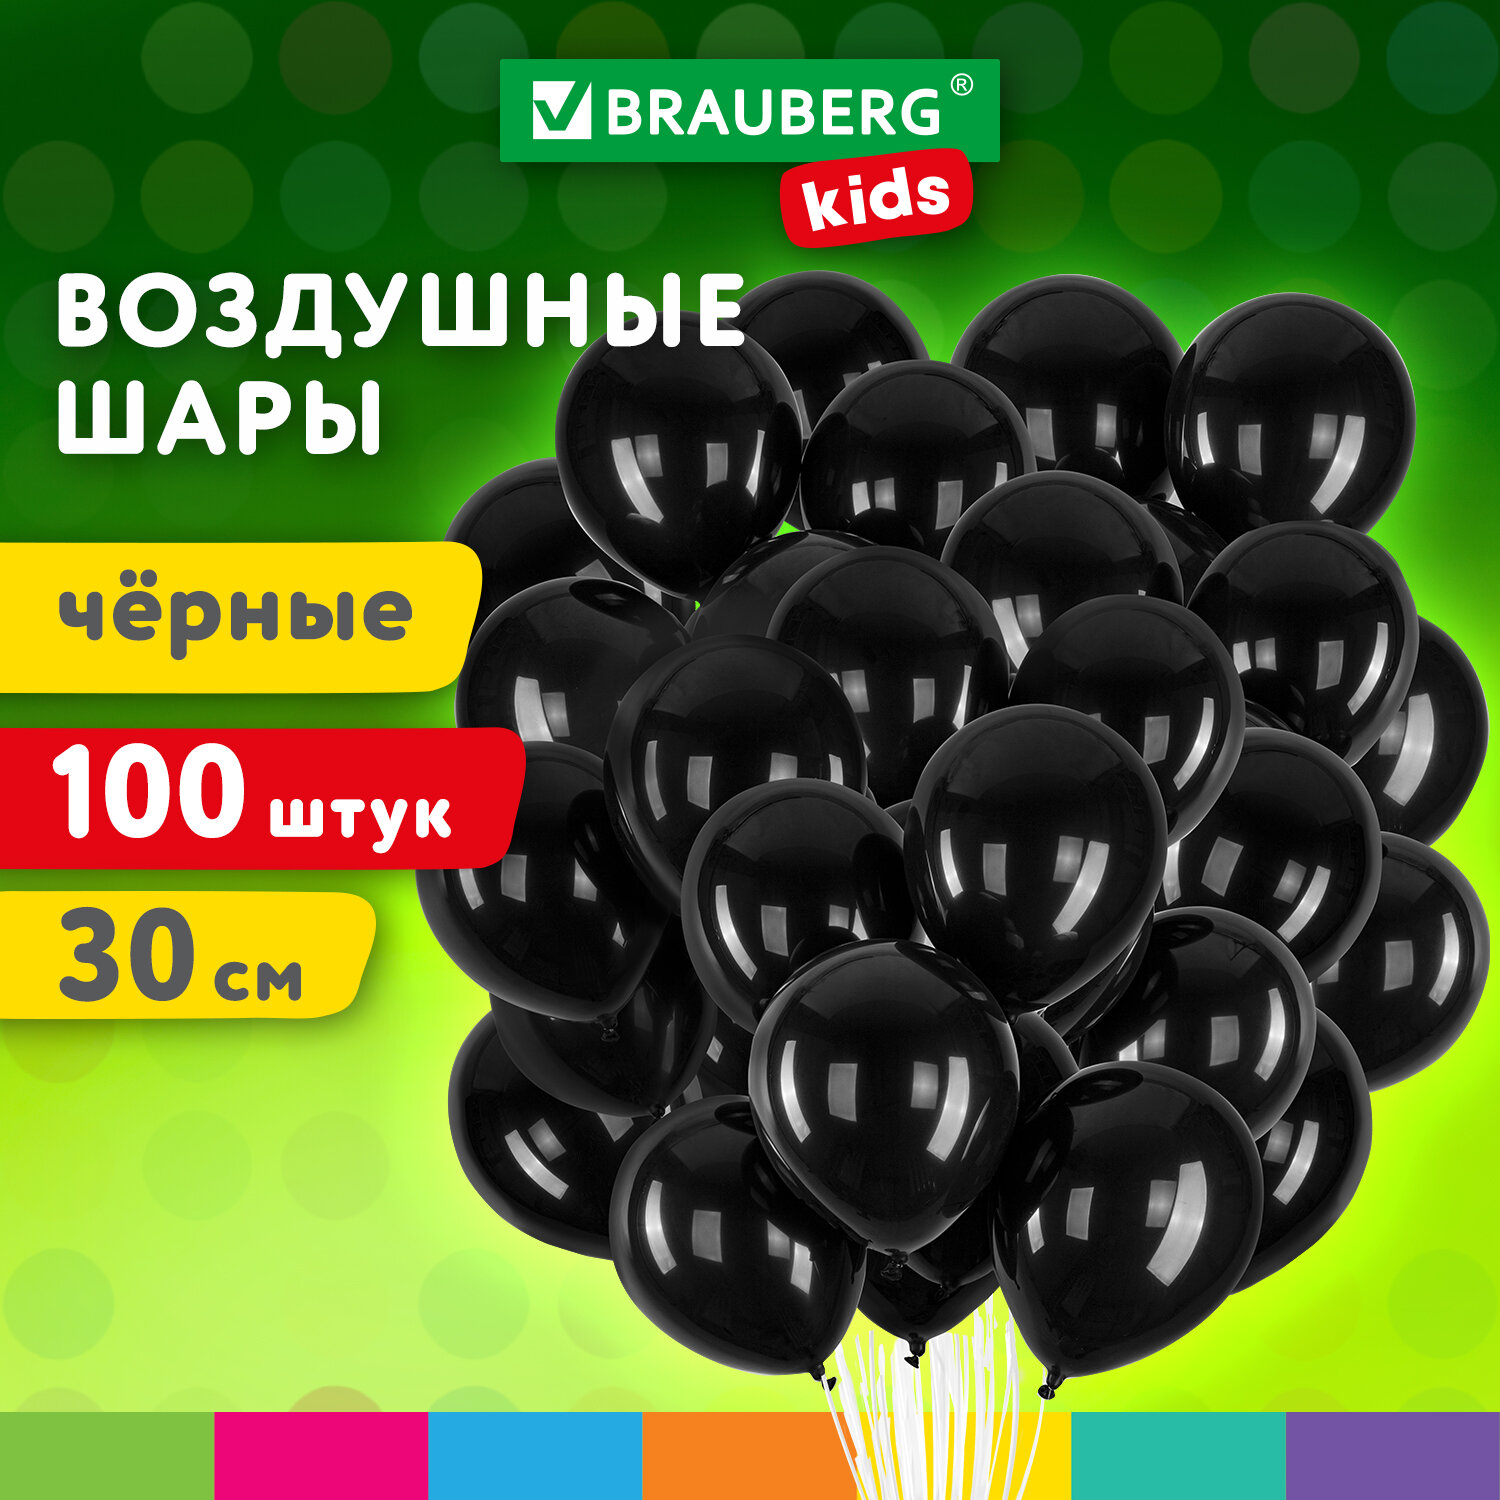 Шарики воздушные Brauberg Kids 591876 набор на день рождения, для фотозоны, 30 см, 100 шт воздушные шары для фотозоны